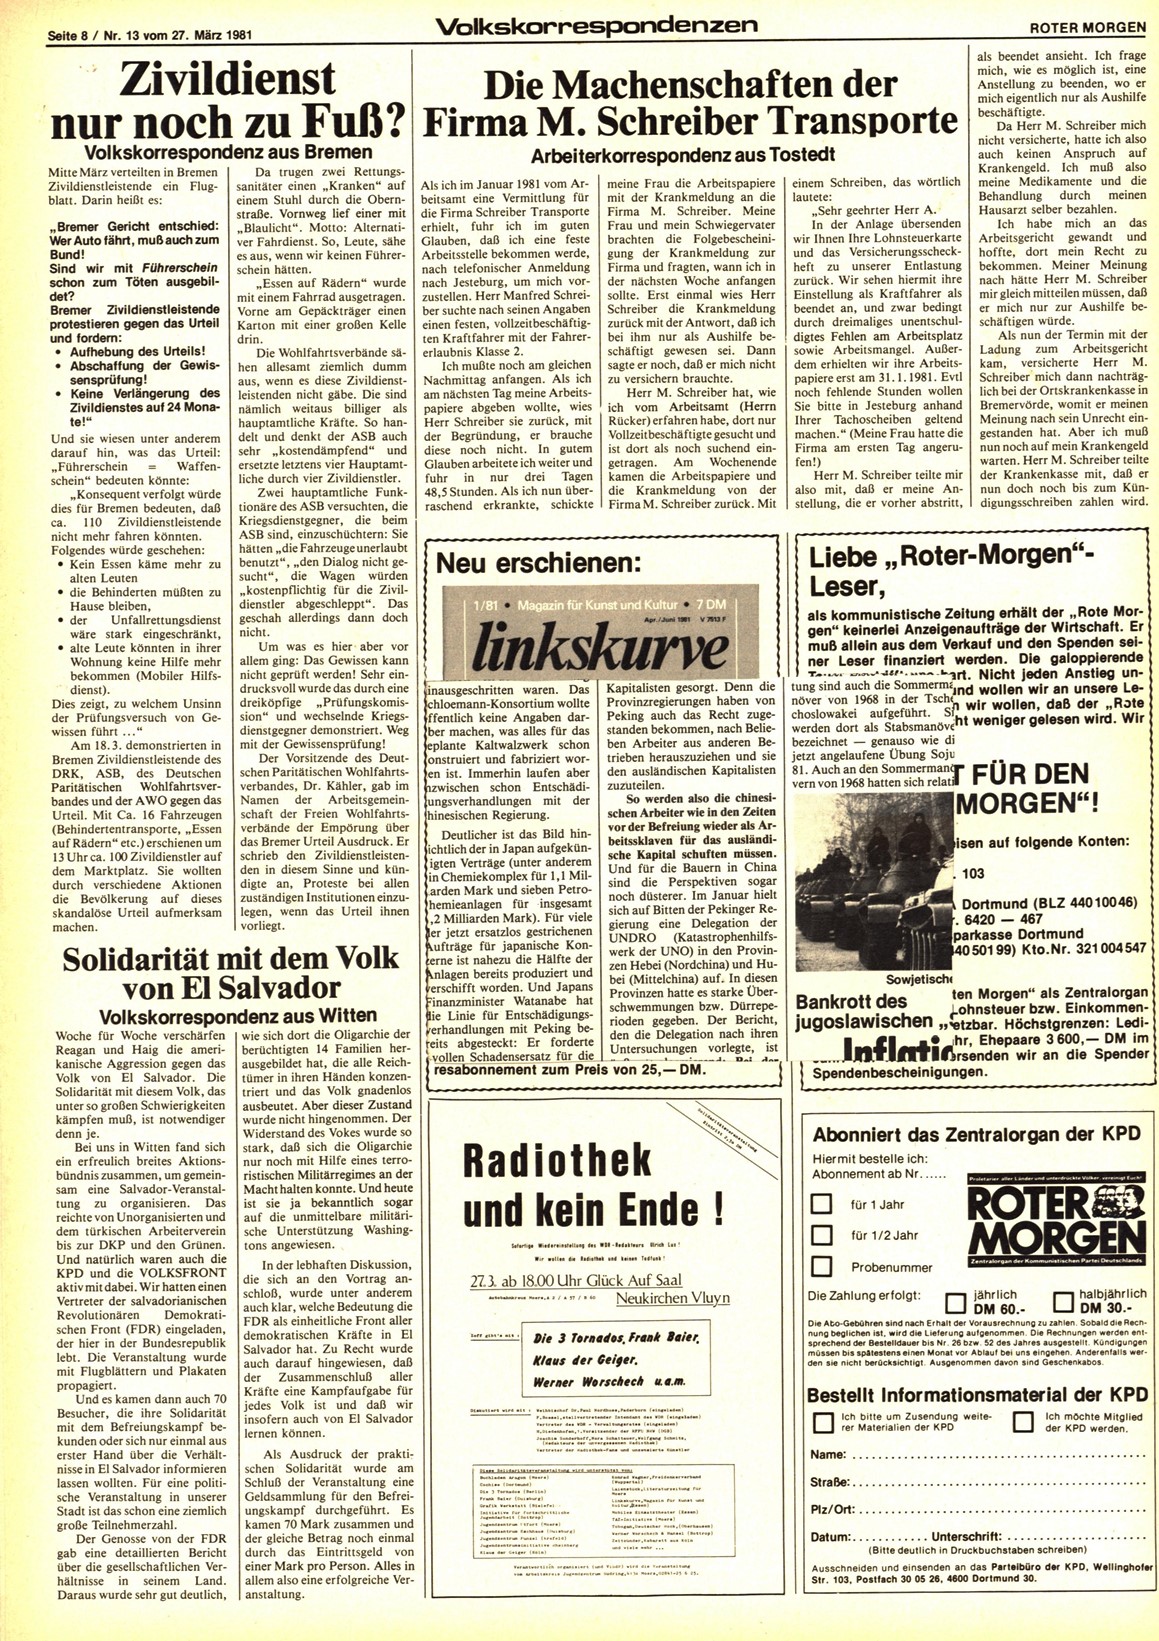 Roter Morgen, 15. Jg., 27. März 1981, Nr. 13, Seite 8